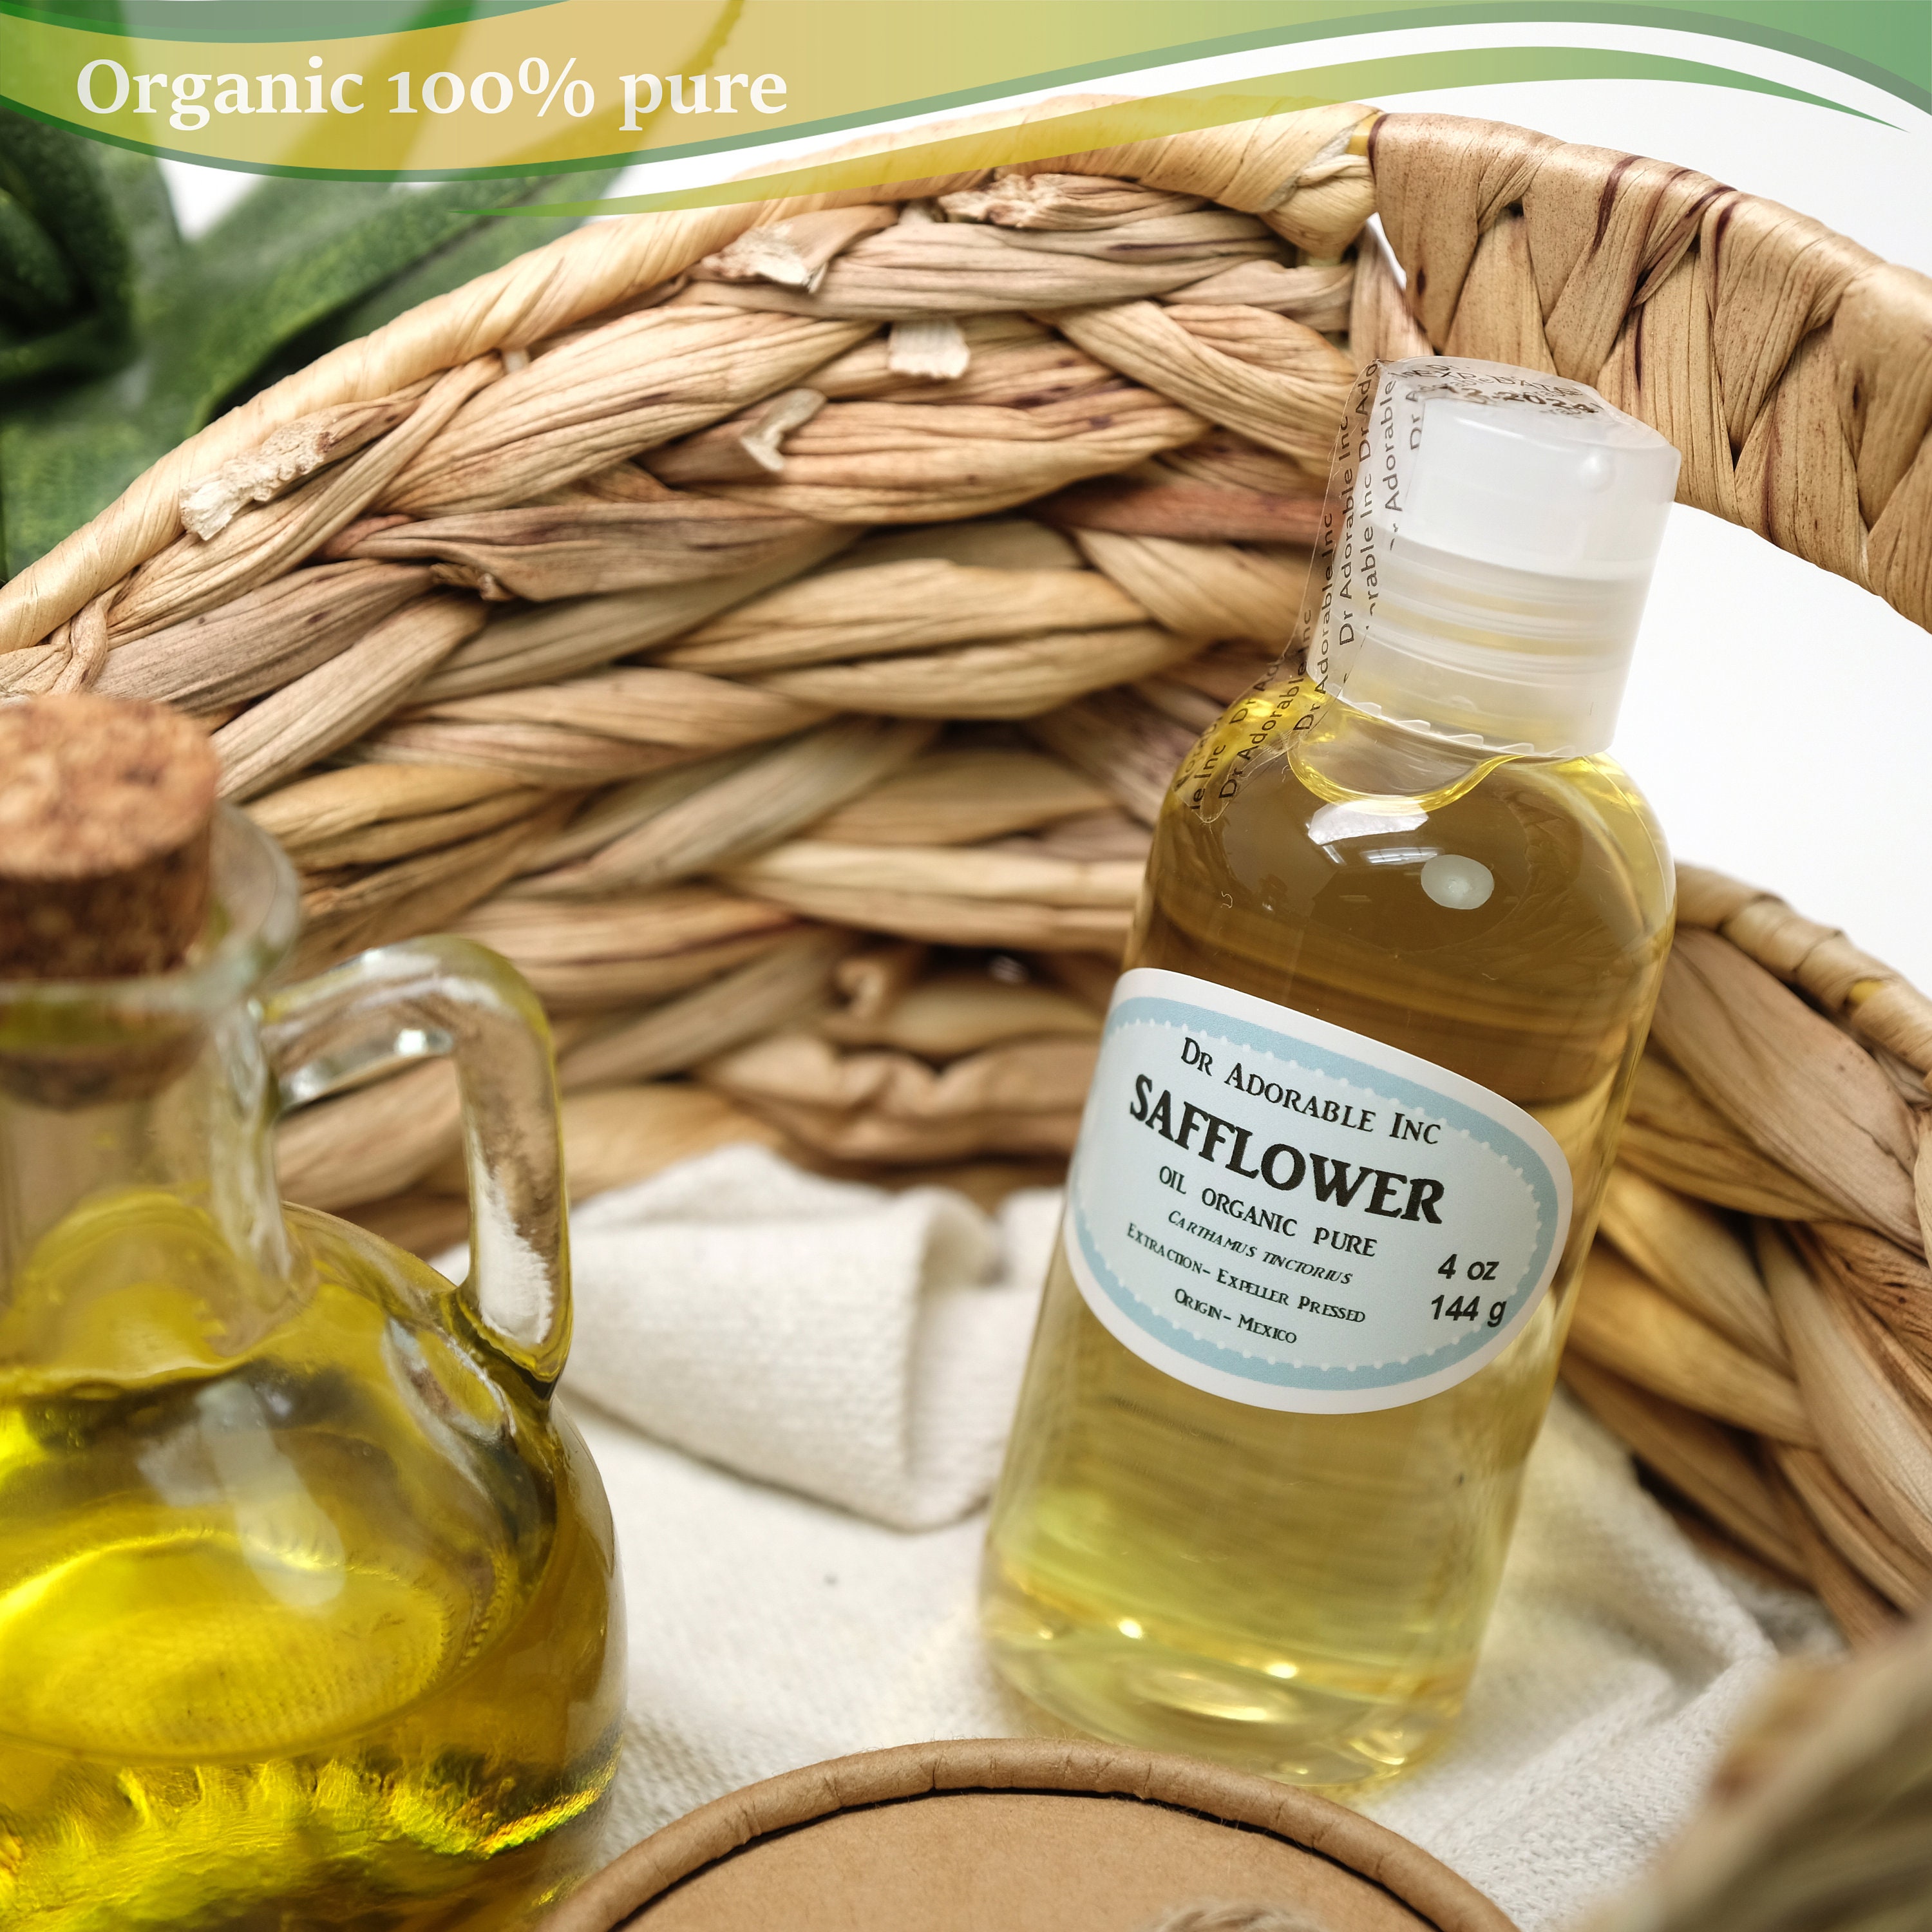 32 Oz Safflower Oil 100% Pure Organic Cold Pressed 